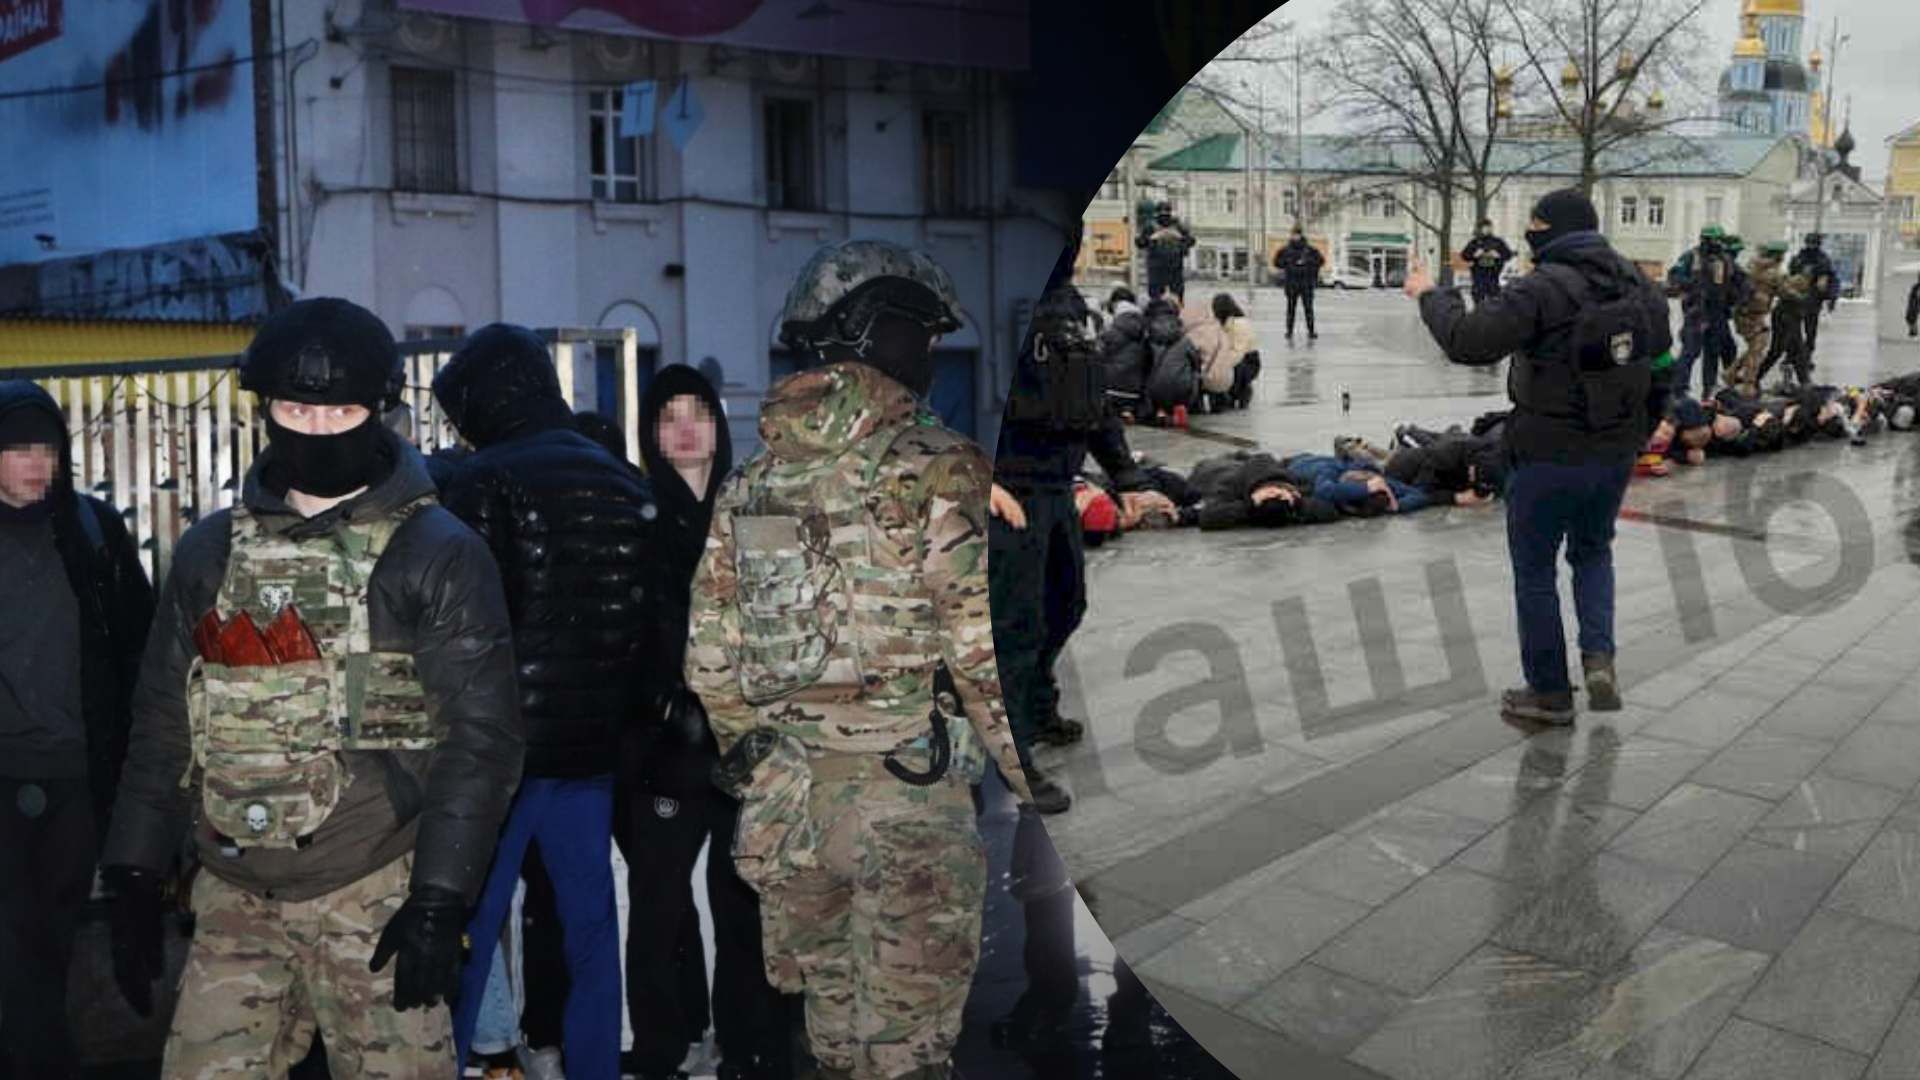 ПВК Редан в Харькове - в полиции рассказали, что драку готовили 300 человек